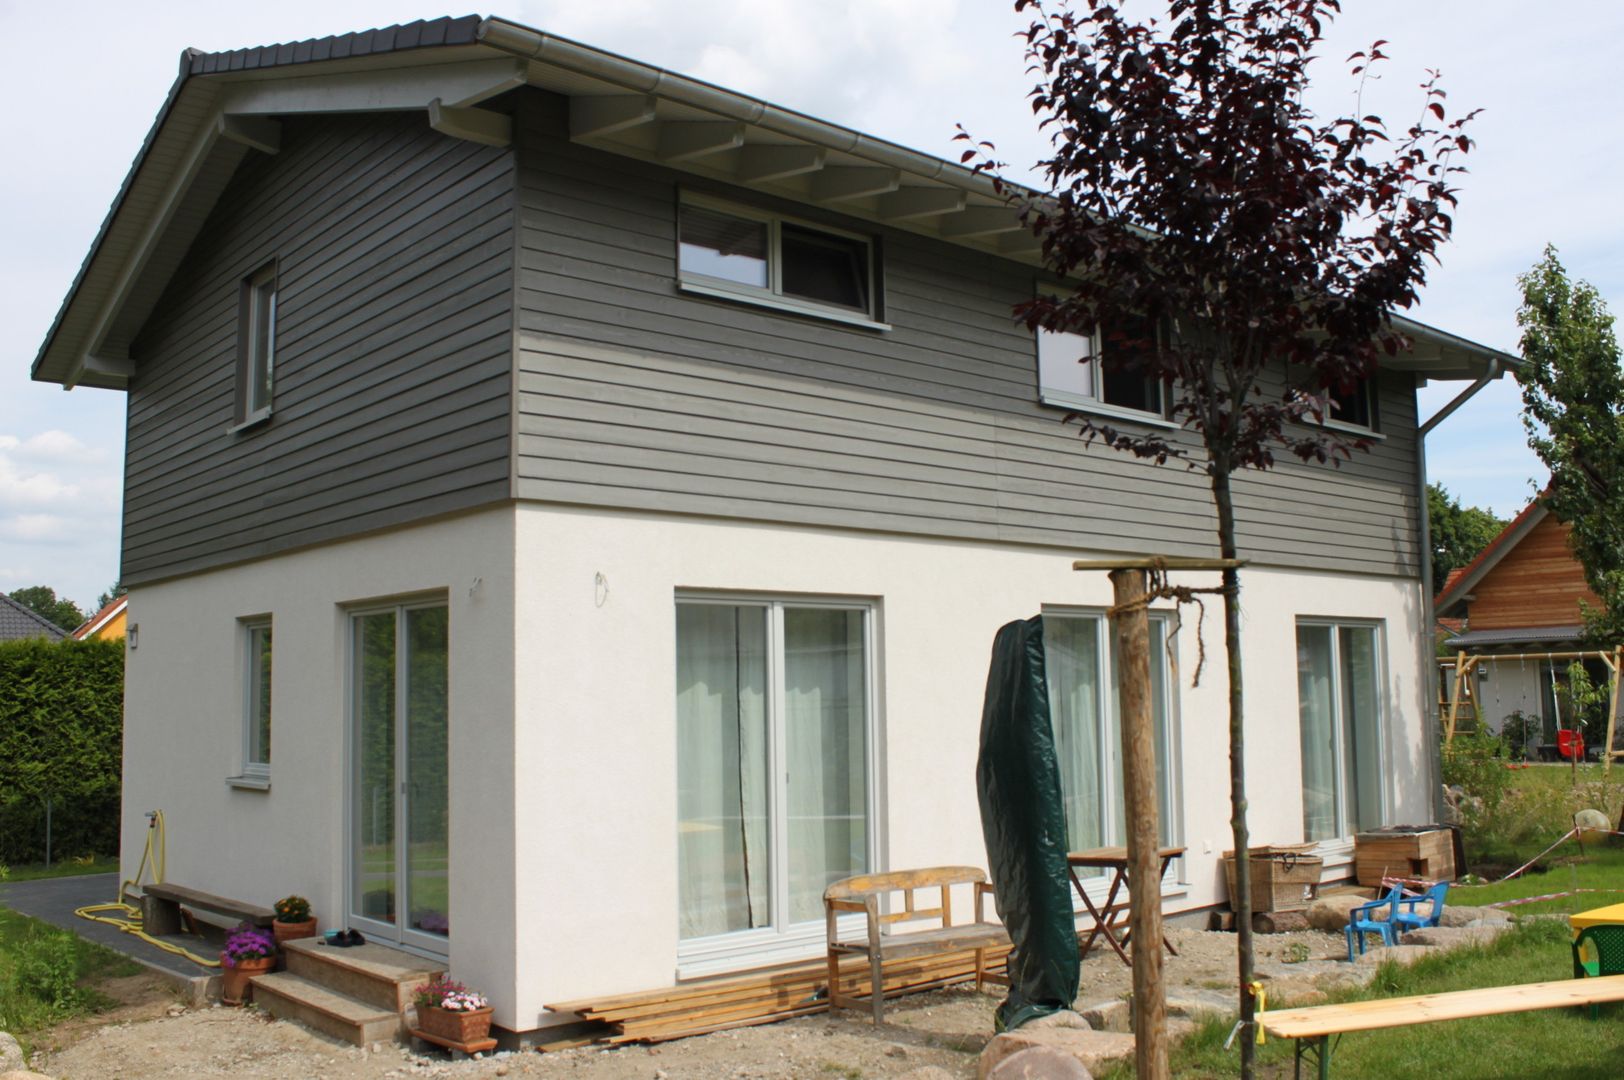 Wohngesundes Holzhaus - modern und kostengünstig, Neues Gesundes Bauen Neues Gesundes Bauen 모던스타일 주택